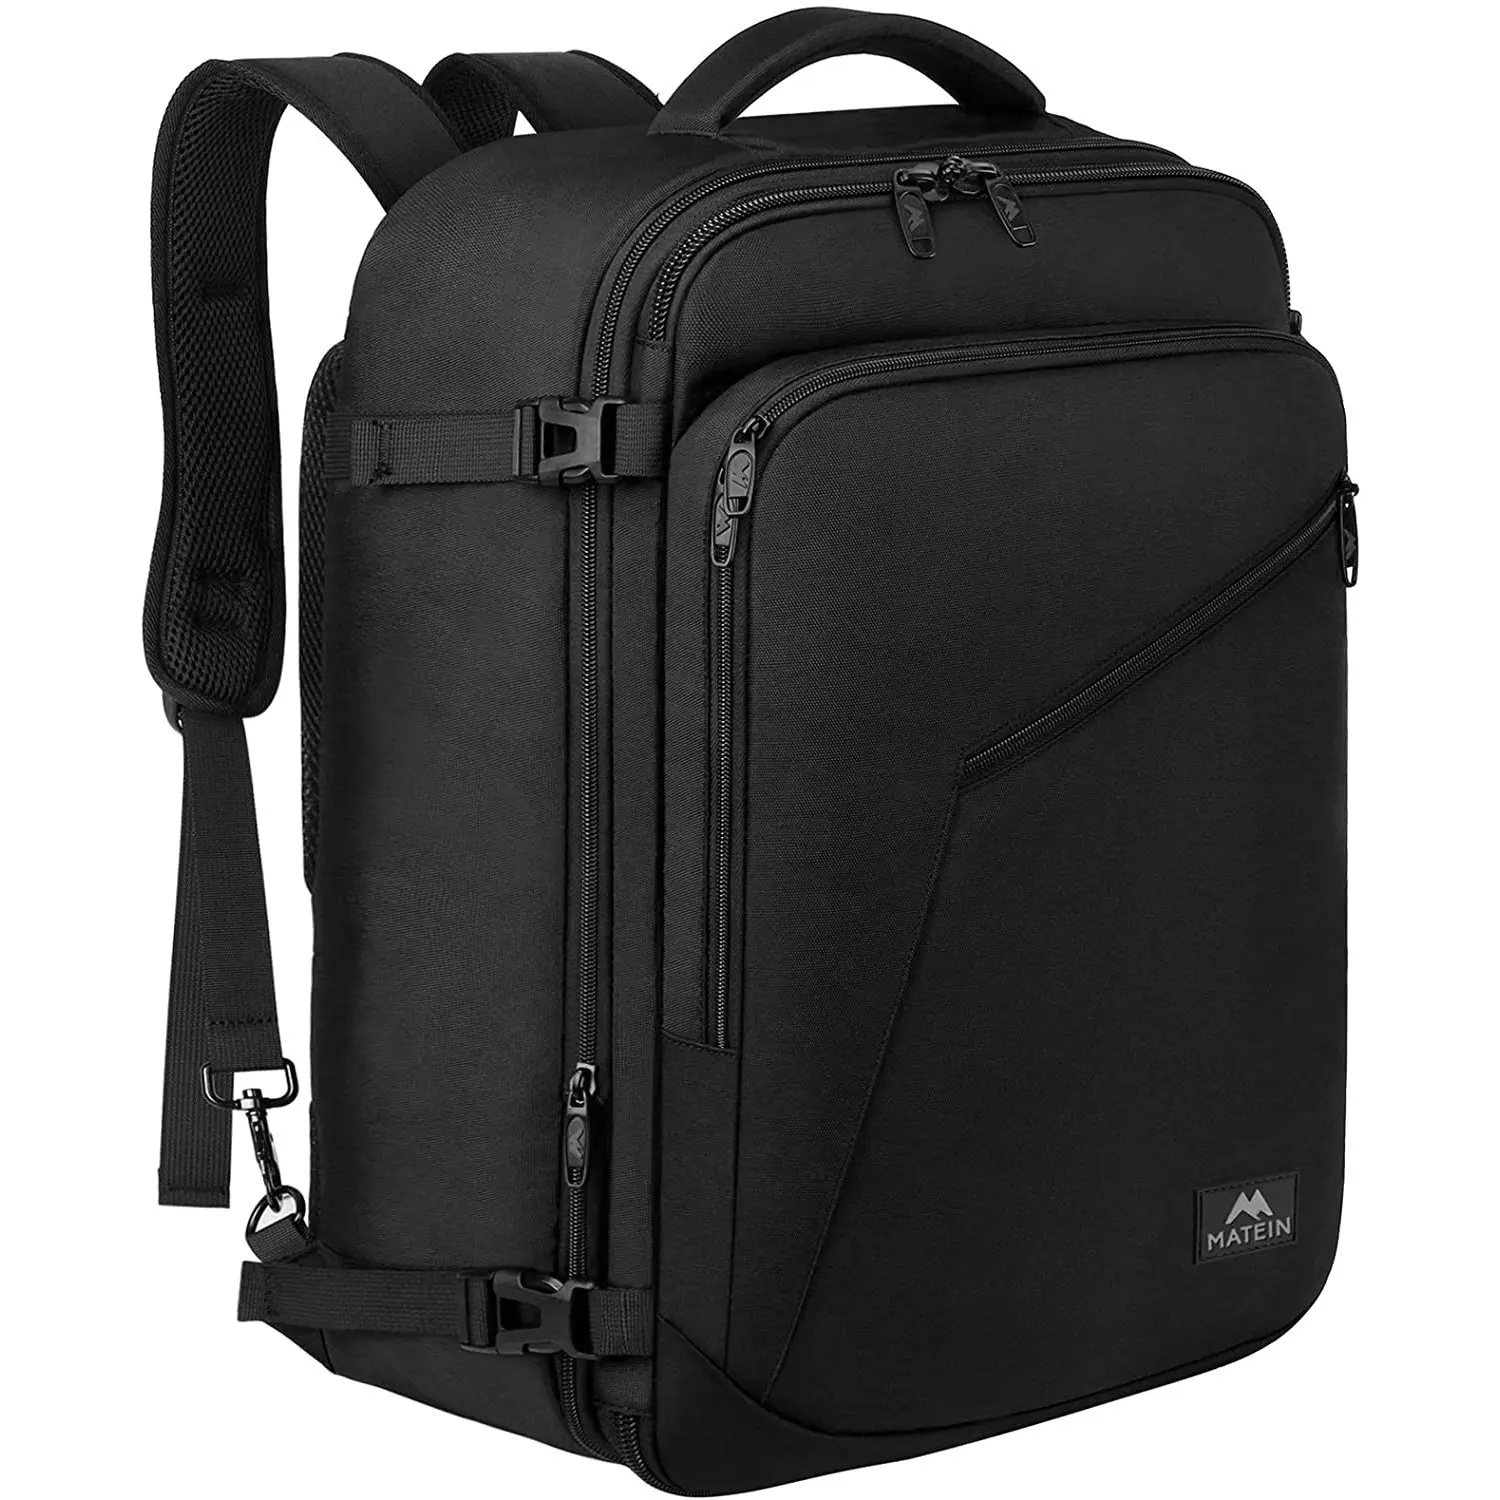 

40L Travel Backpack Flight Approved Carry On Bag International Travel Bag Durable Polyester Laptop Backpack Weekender Bag